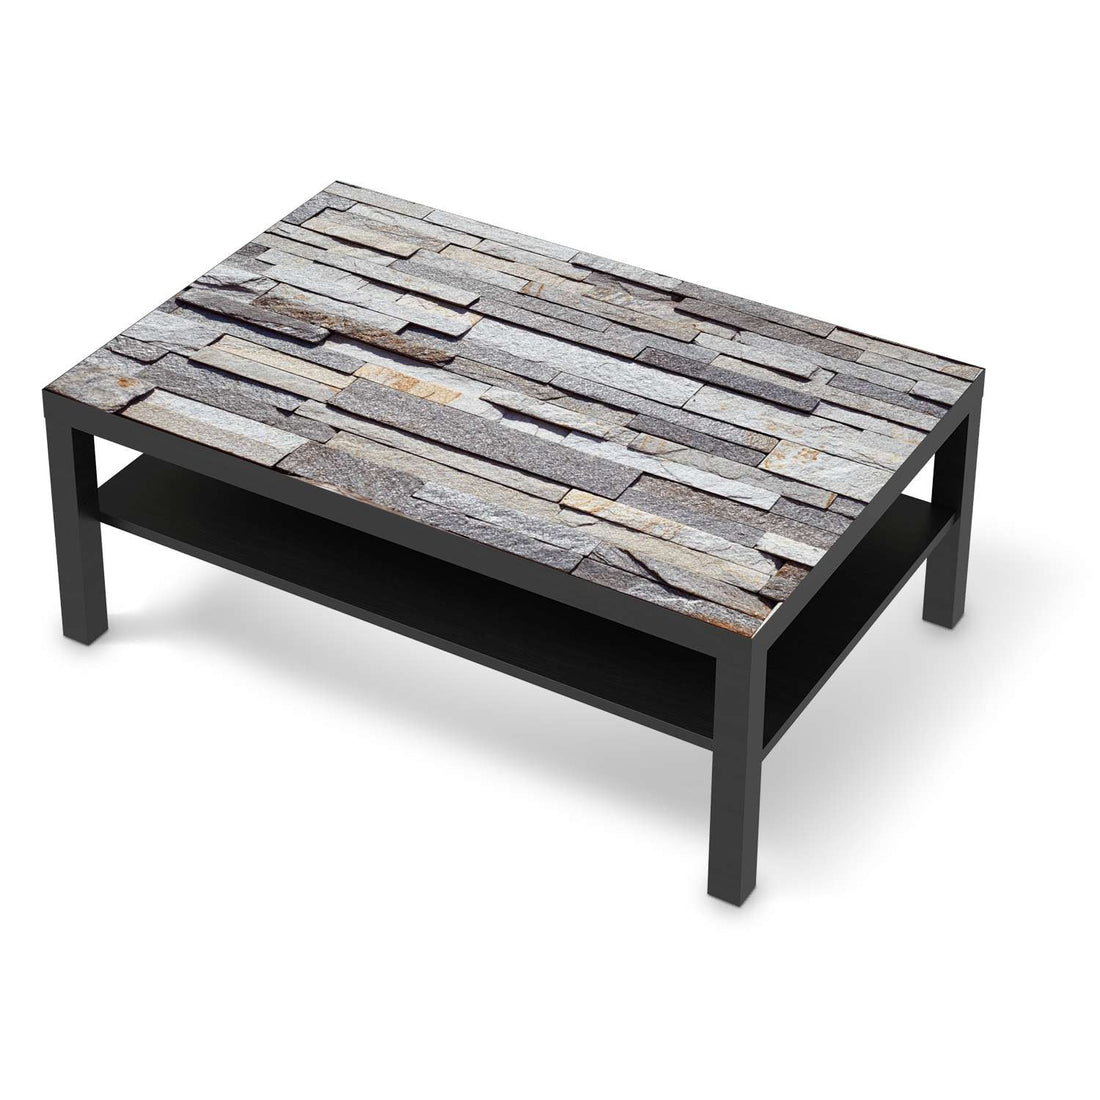 Klebefolie Granit-Wand - IKEA Lack Tisch 118x78 cm - schwarz